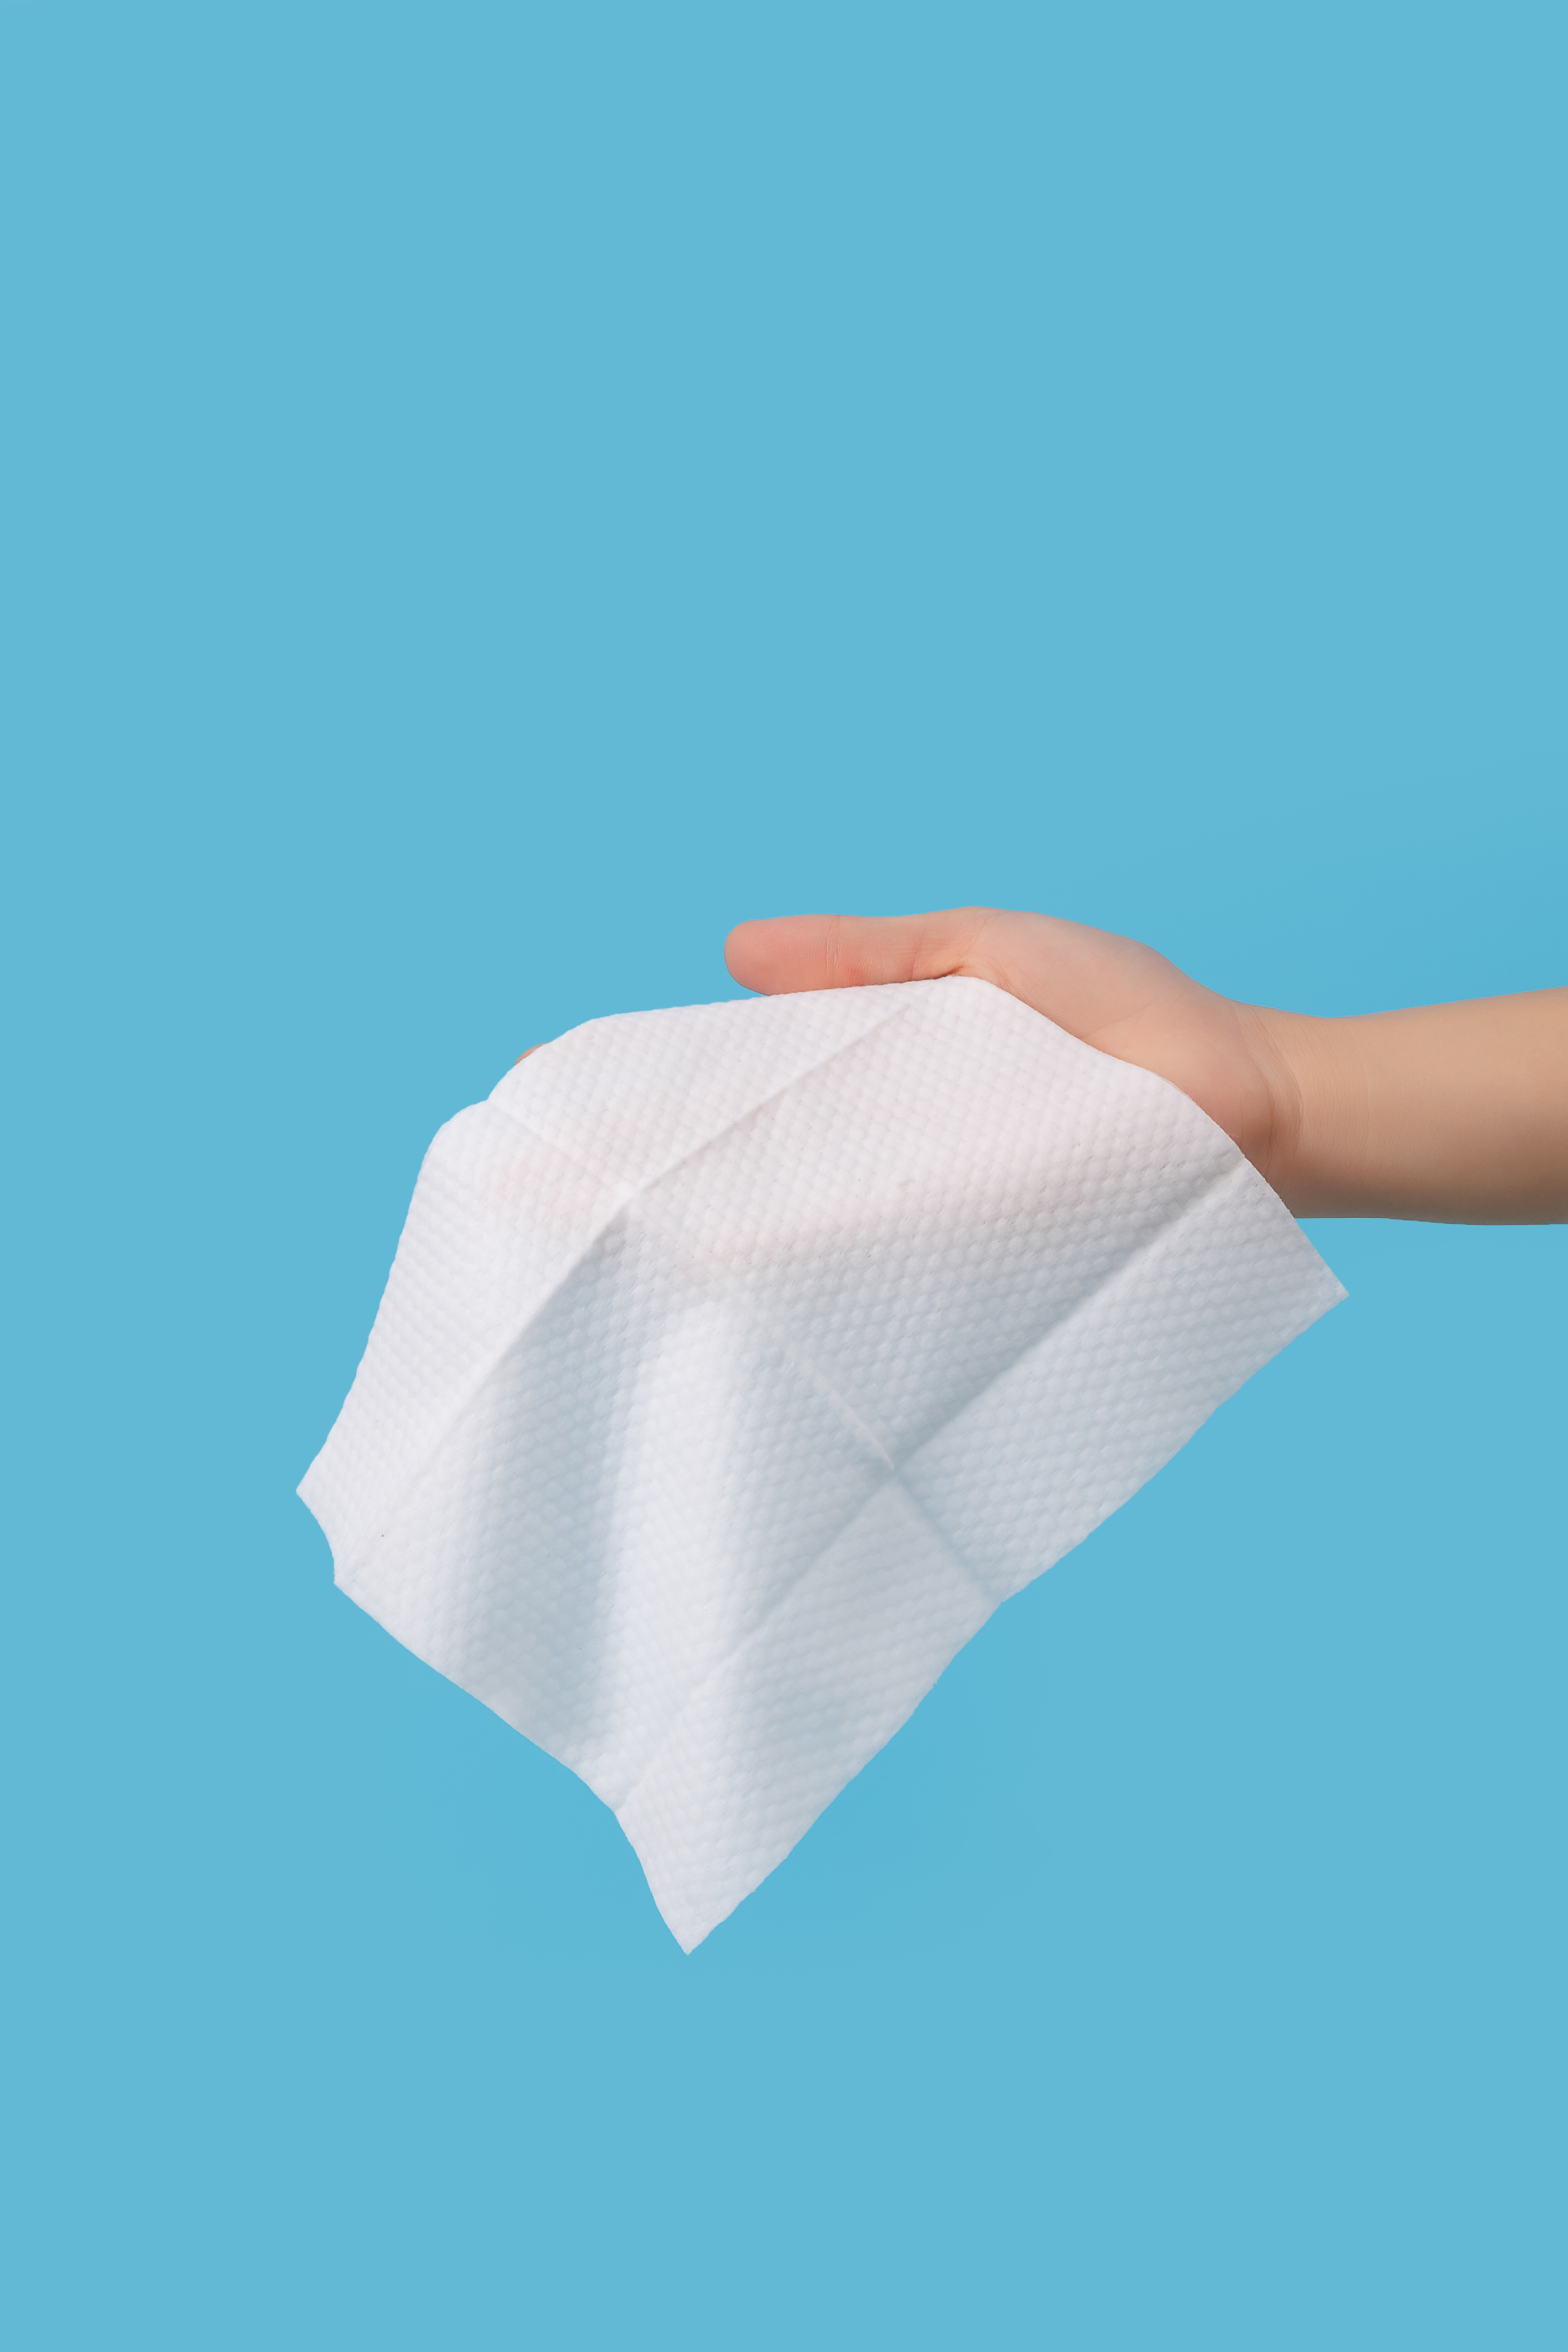 【柚子优选】婴儿湿巾纸大包手口屁儿童专用抽取式湿纸巾